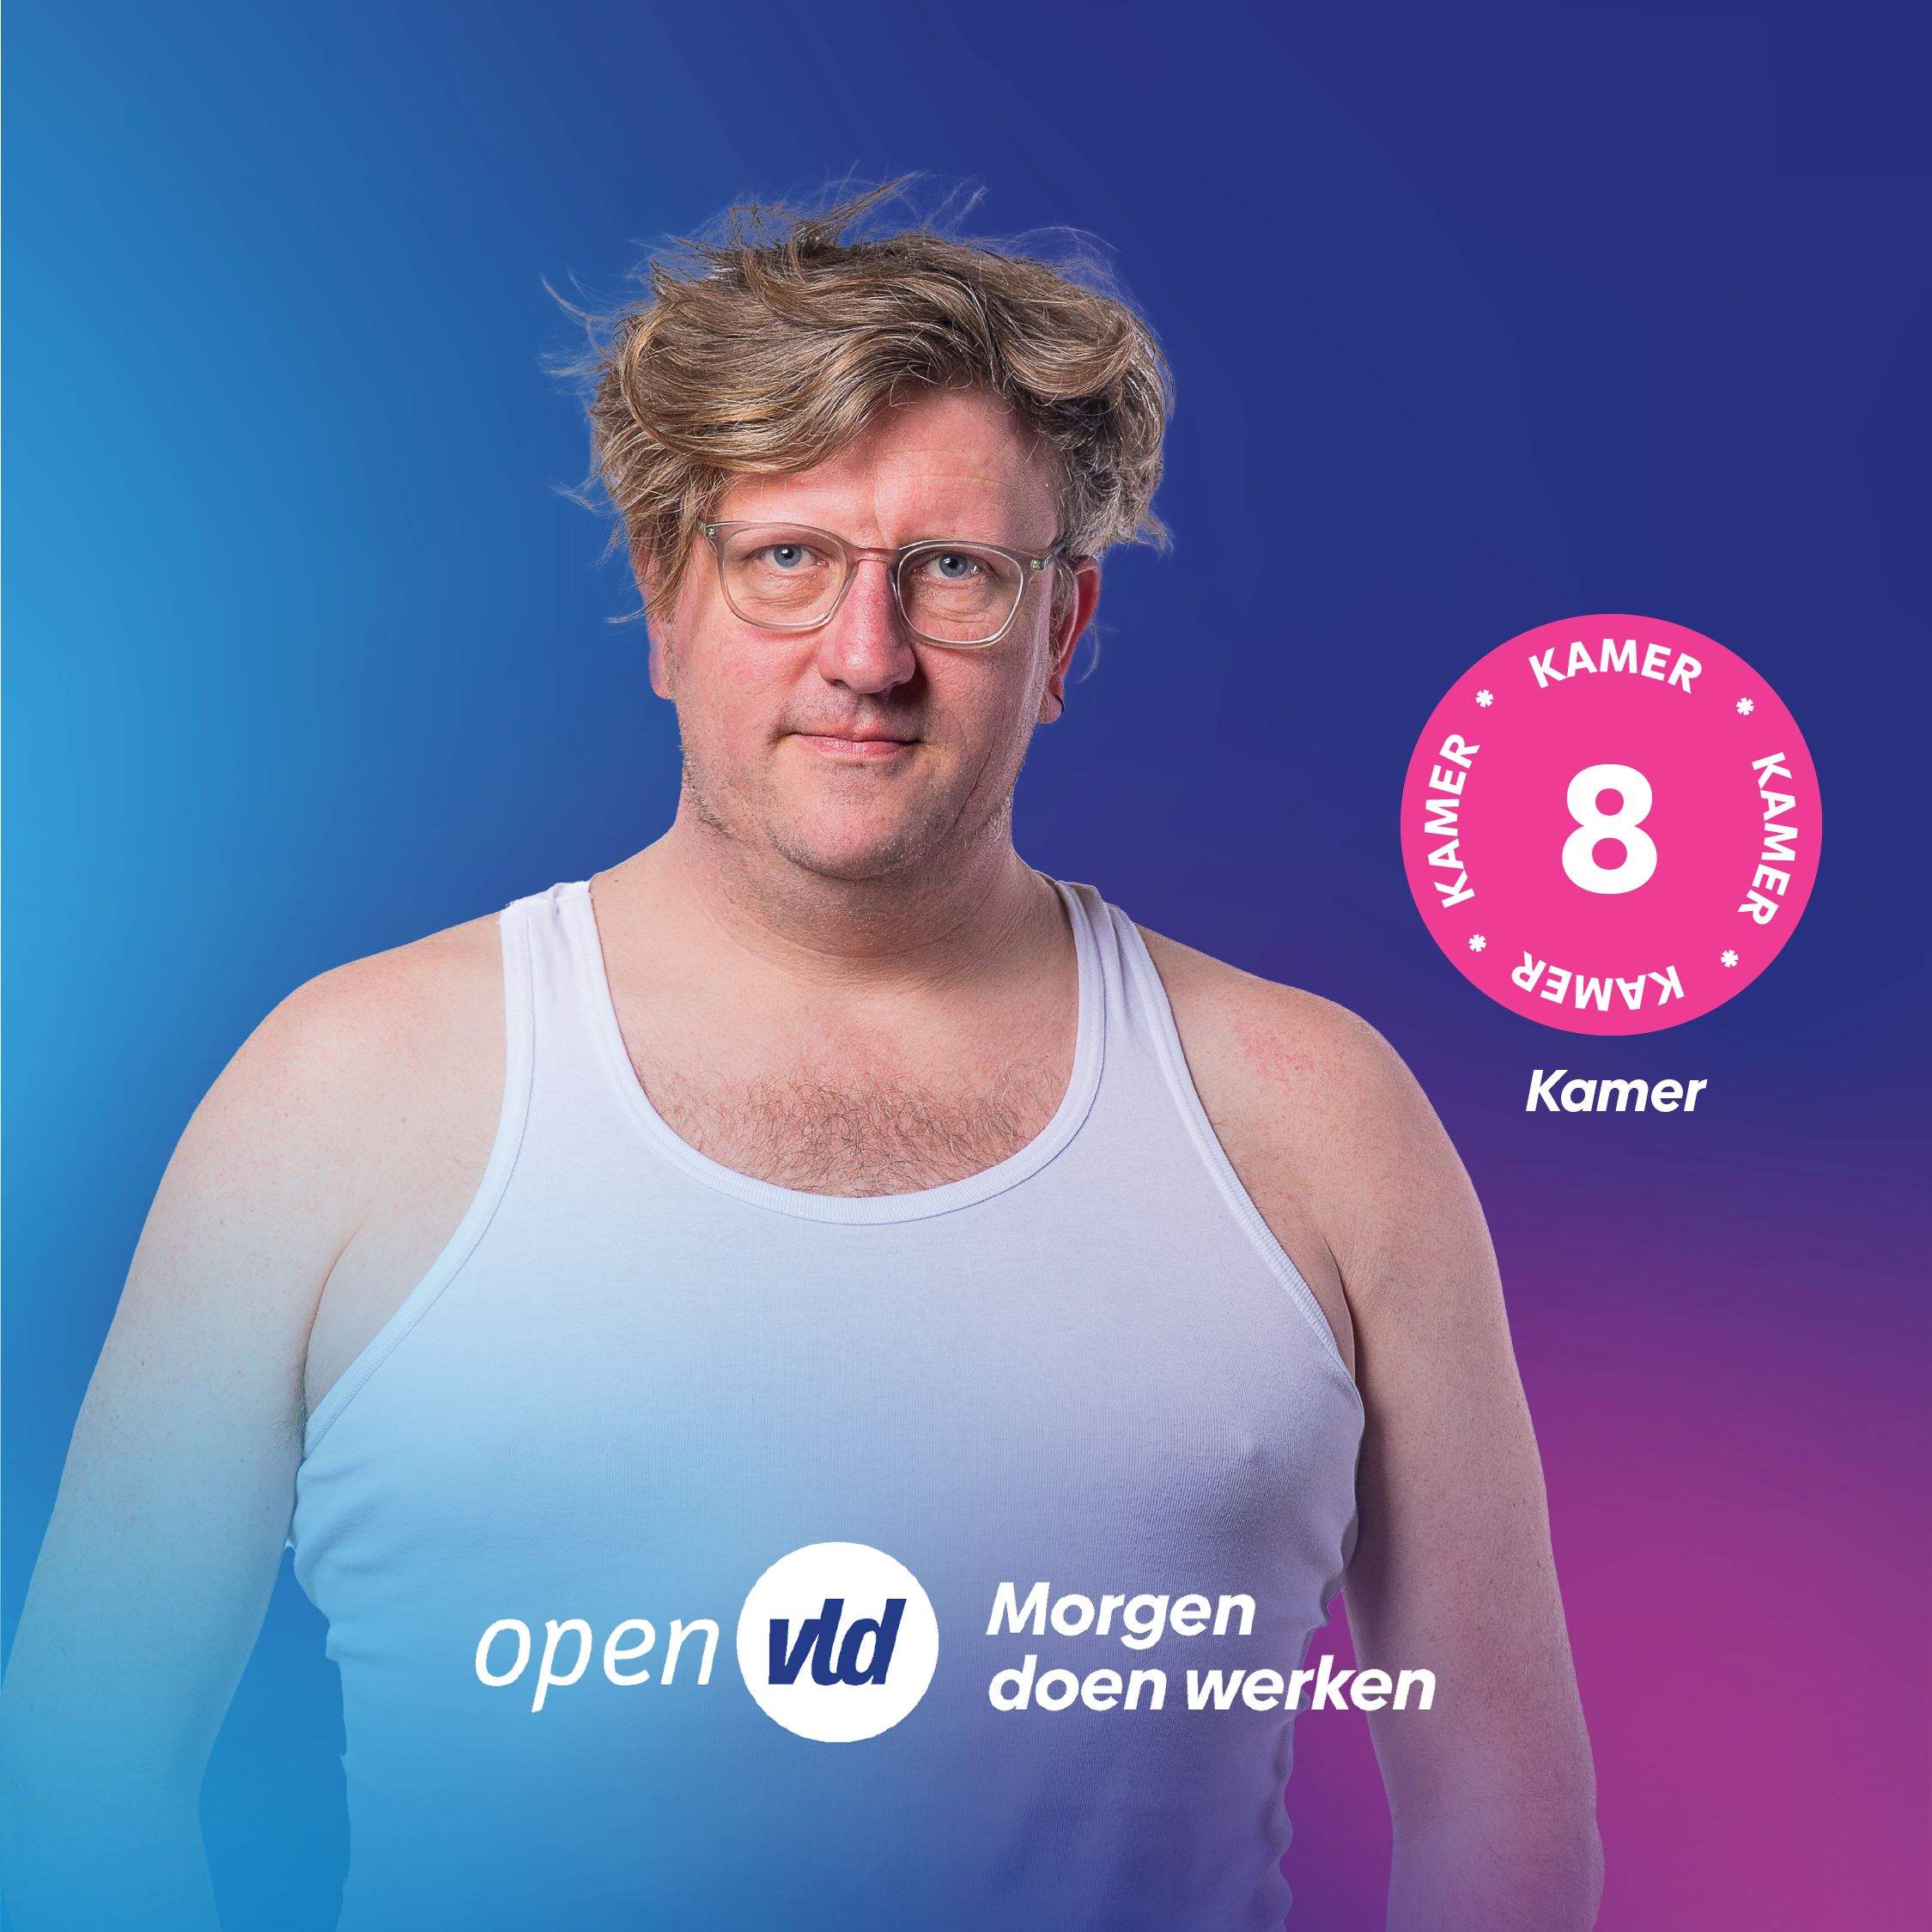 Qui és el candidat belga que surt a les fotos de campanya amb samarreta imperi?